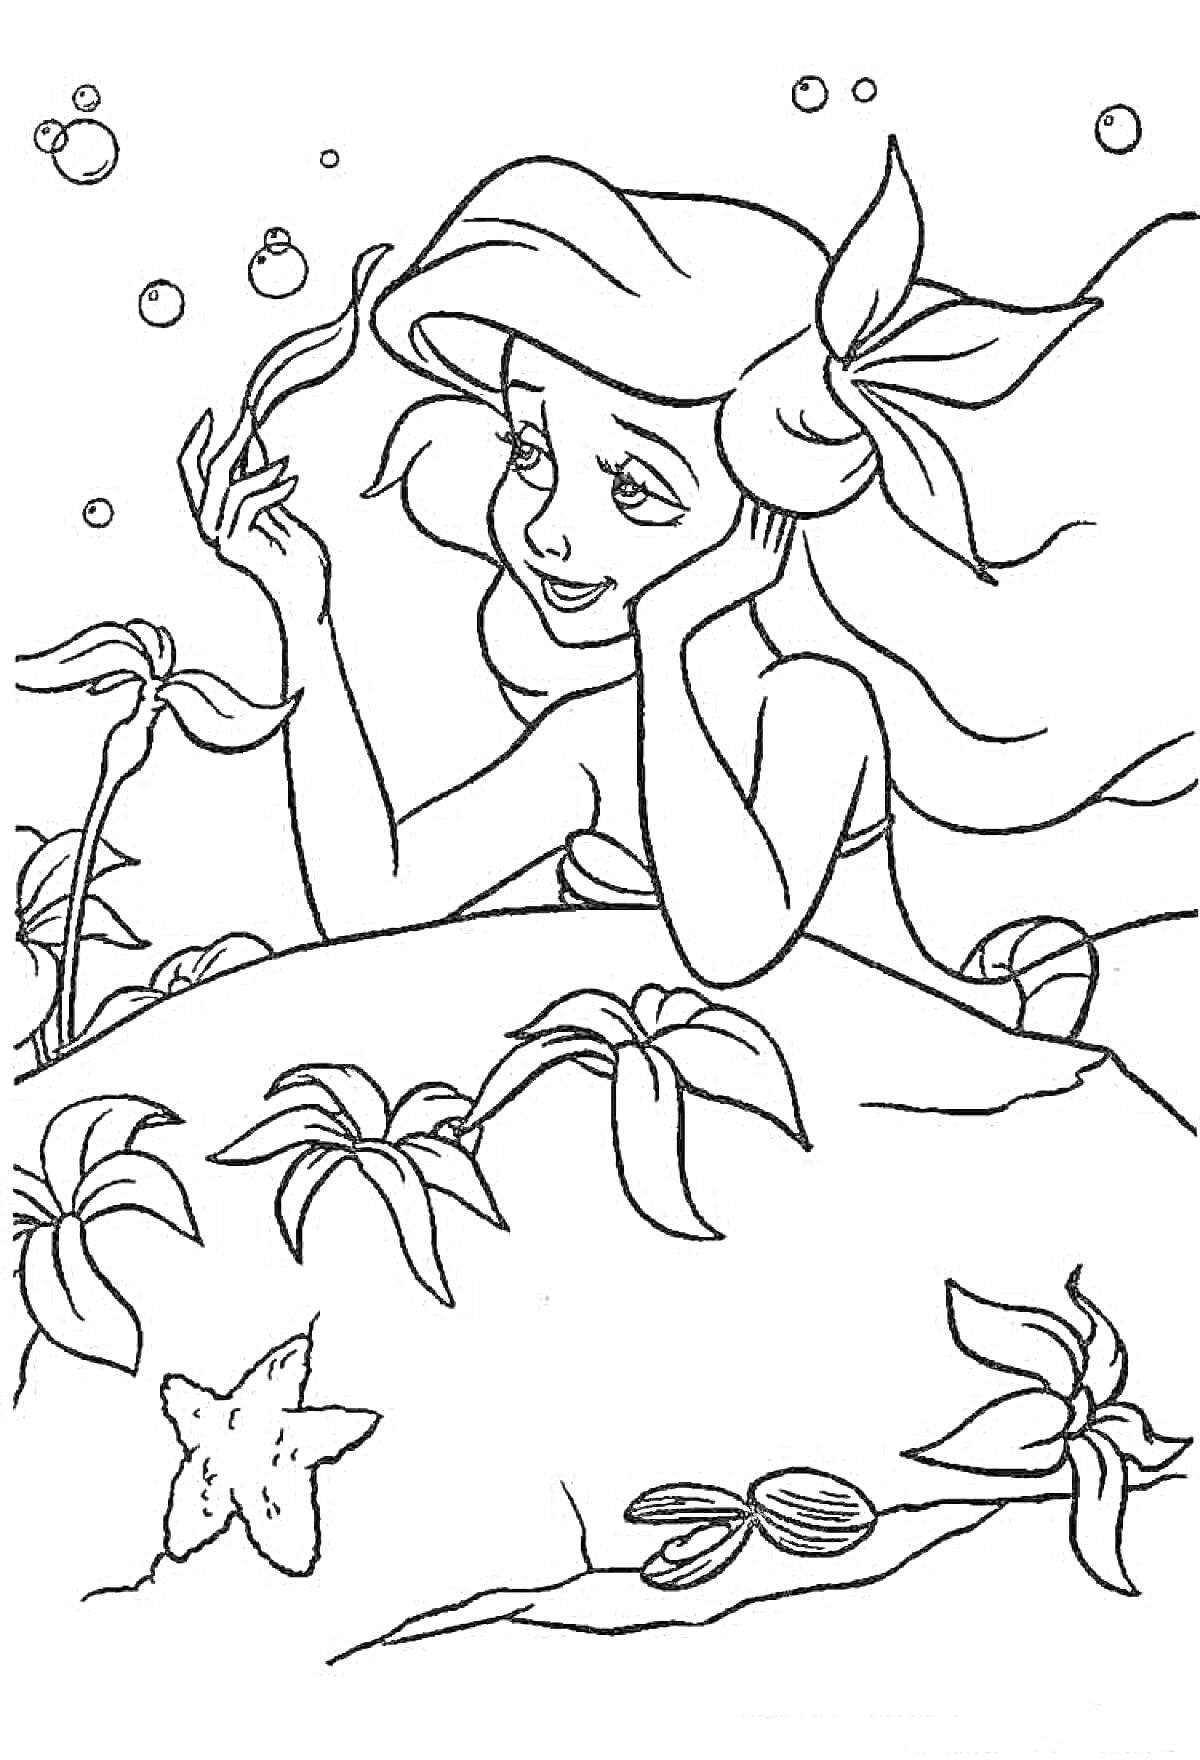 РаскраскаАриэль русалочка с растениями, морскими звездами и ракушками под водой